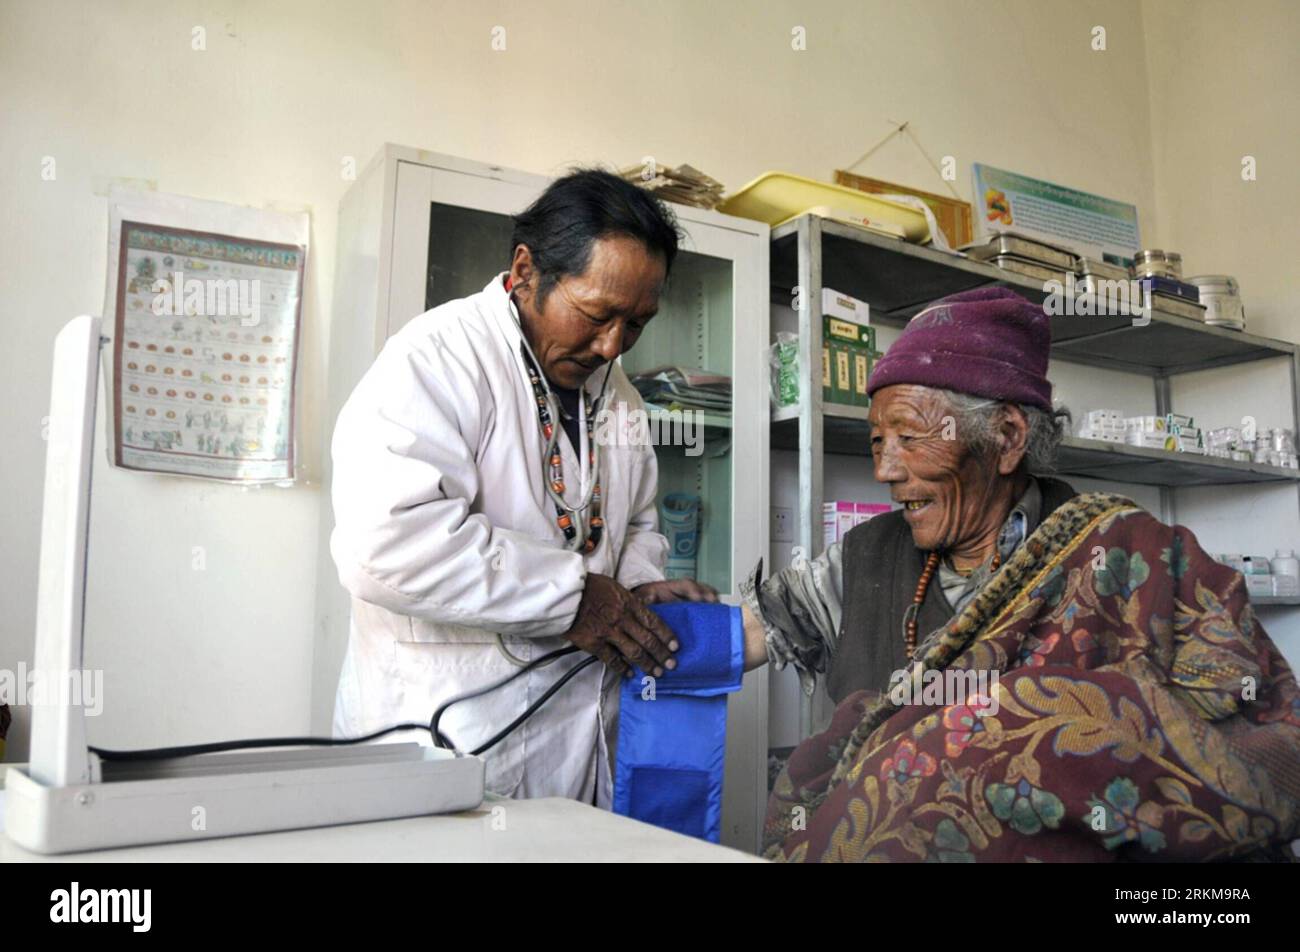 Bildnummer: 56602722 Datum: 03.12.2011 Copyright: imago/Xinhua (111204) -- ALI, 4. Dezember 2011 (Xinhua) -- Ein Arzt tibetischer ethnischer Gruppen kontrolliert den Blutdruck eines lokalen Dorfbewohners in der Klinik des Qianggu Dorfes im Gaize County in der Präfektur Ali, südwestchinesische Autonome Region Tibet, 3. Dezember 2011. China Mobile, die Telekom des Landes titan, hat 150 Millionen Yuan (24 Millionen US-Dollar) unterstützt, um die Lebensgrundlage der lokalen Bevölkerung im Gaize County zu verbessern, und der größte Teil dieser Hilfsgelder wird für das Leben in landwirtschaftlichen und pastoralen Gebieten bereitgestellt. Die Bauern und Hirten vor Ort haben neue Erfahrungen gemacht Stockfoto